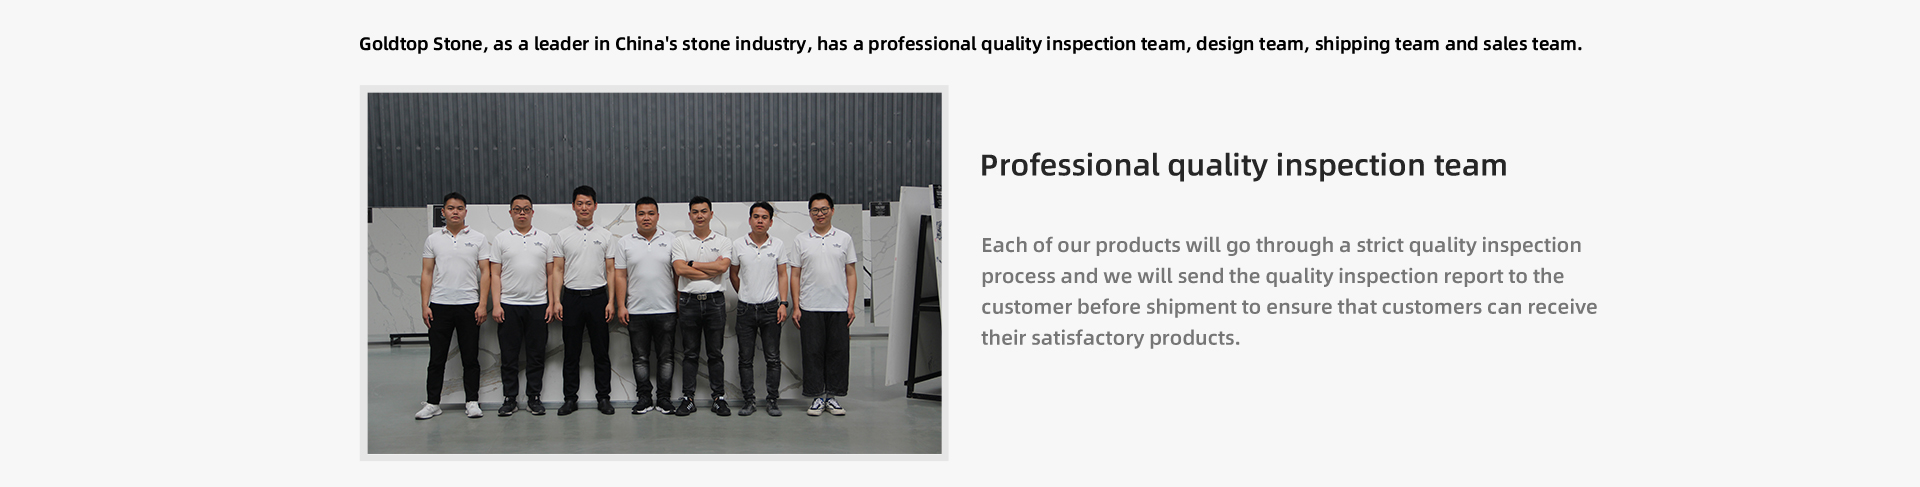 Var och en av våra produkter kommer att genomgå en strikt kvalitetsinspektionsprocess och vi skickar kvalitetsinspektionsrapporten till kunden före leverans för att säkerställa att kunderna kan få sina tillfredsställande produkter.